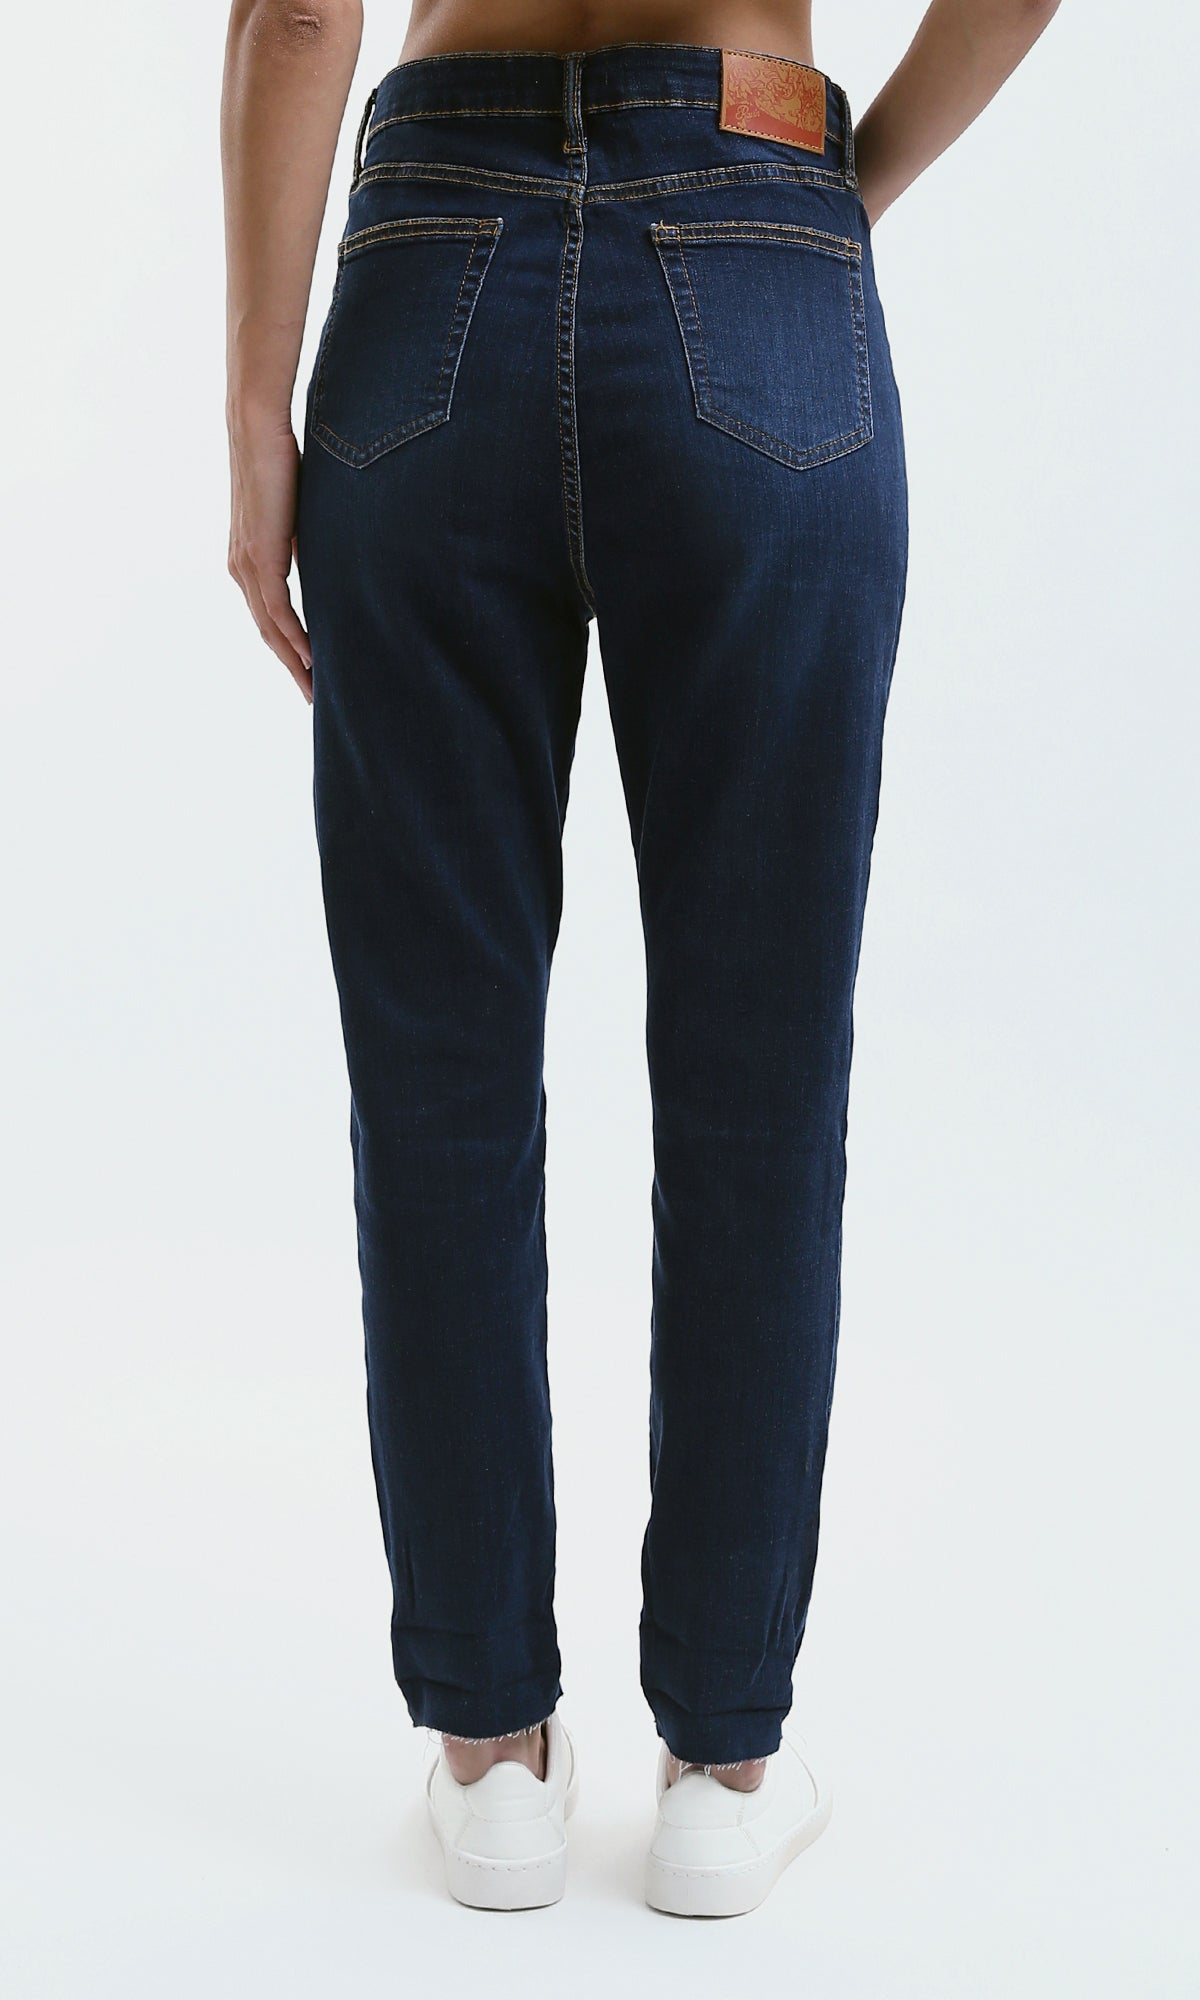 O183101 Women Trouser Jeans